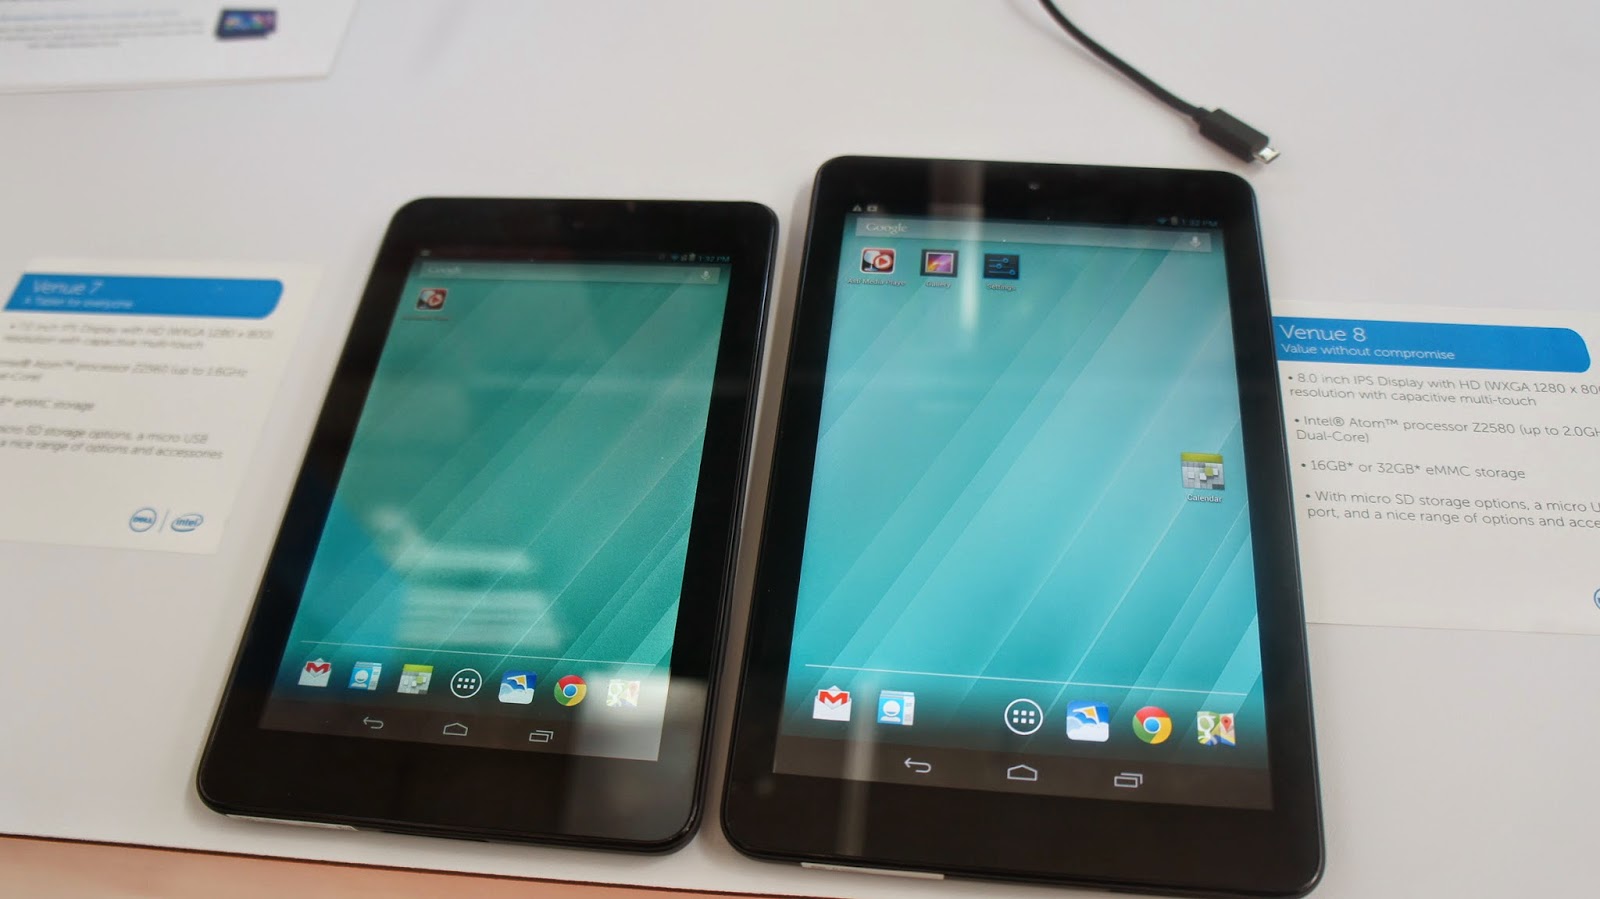 Dell, Venue 7, Venue 8, Android tablets, Dell Venue 7, Dell Venue 8, Dell tablets, Dell Android tablets, mobile, 